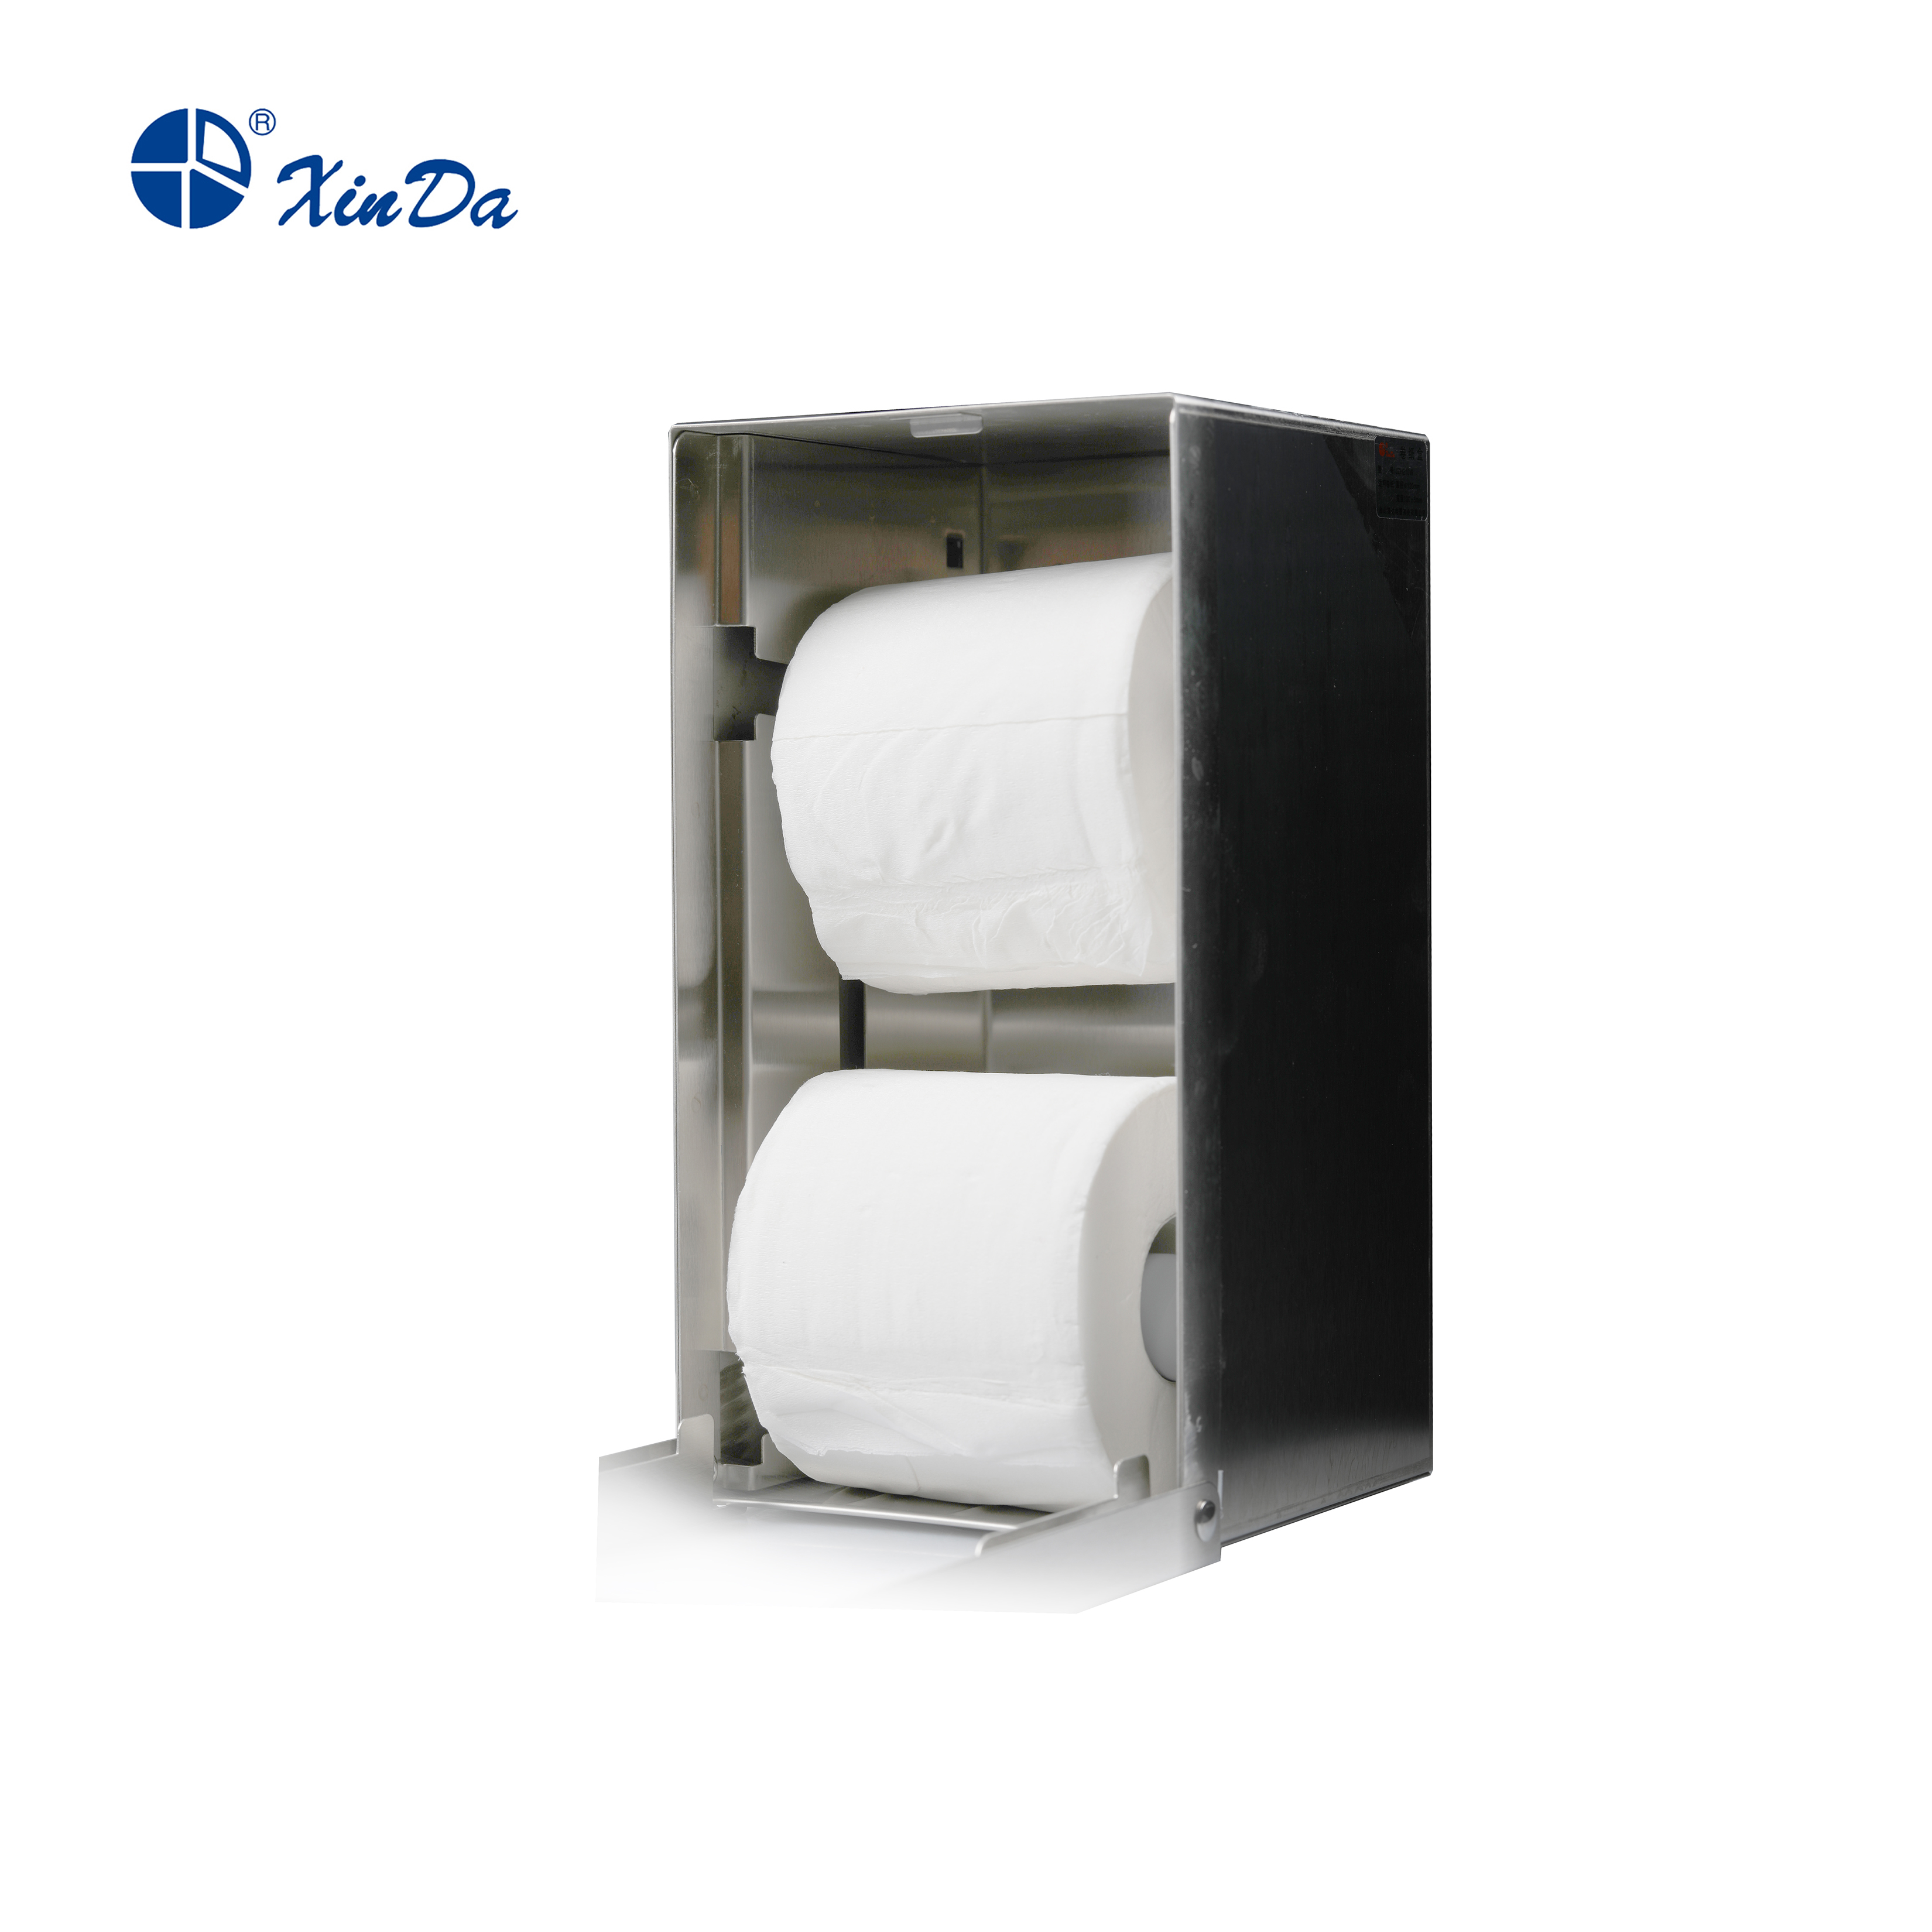  Papierhandtuchspender Tissue Box/Edelstahl Tissue Box